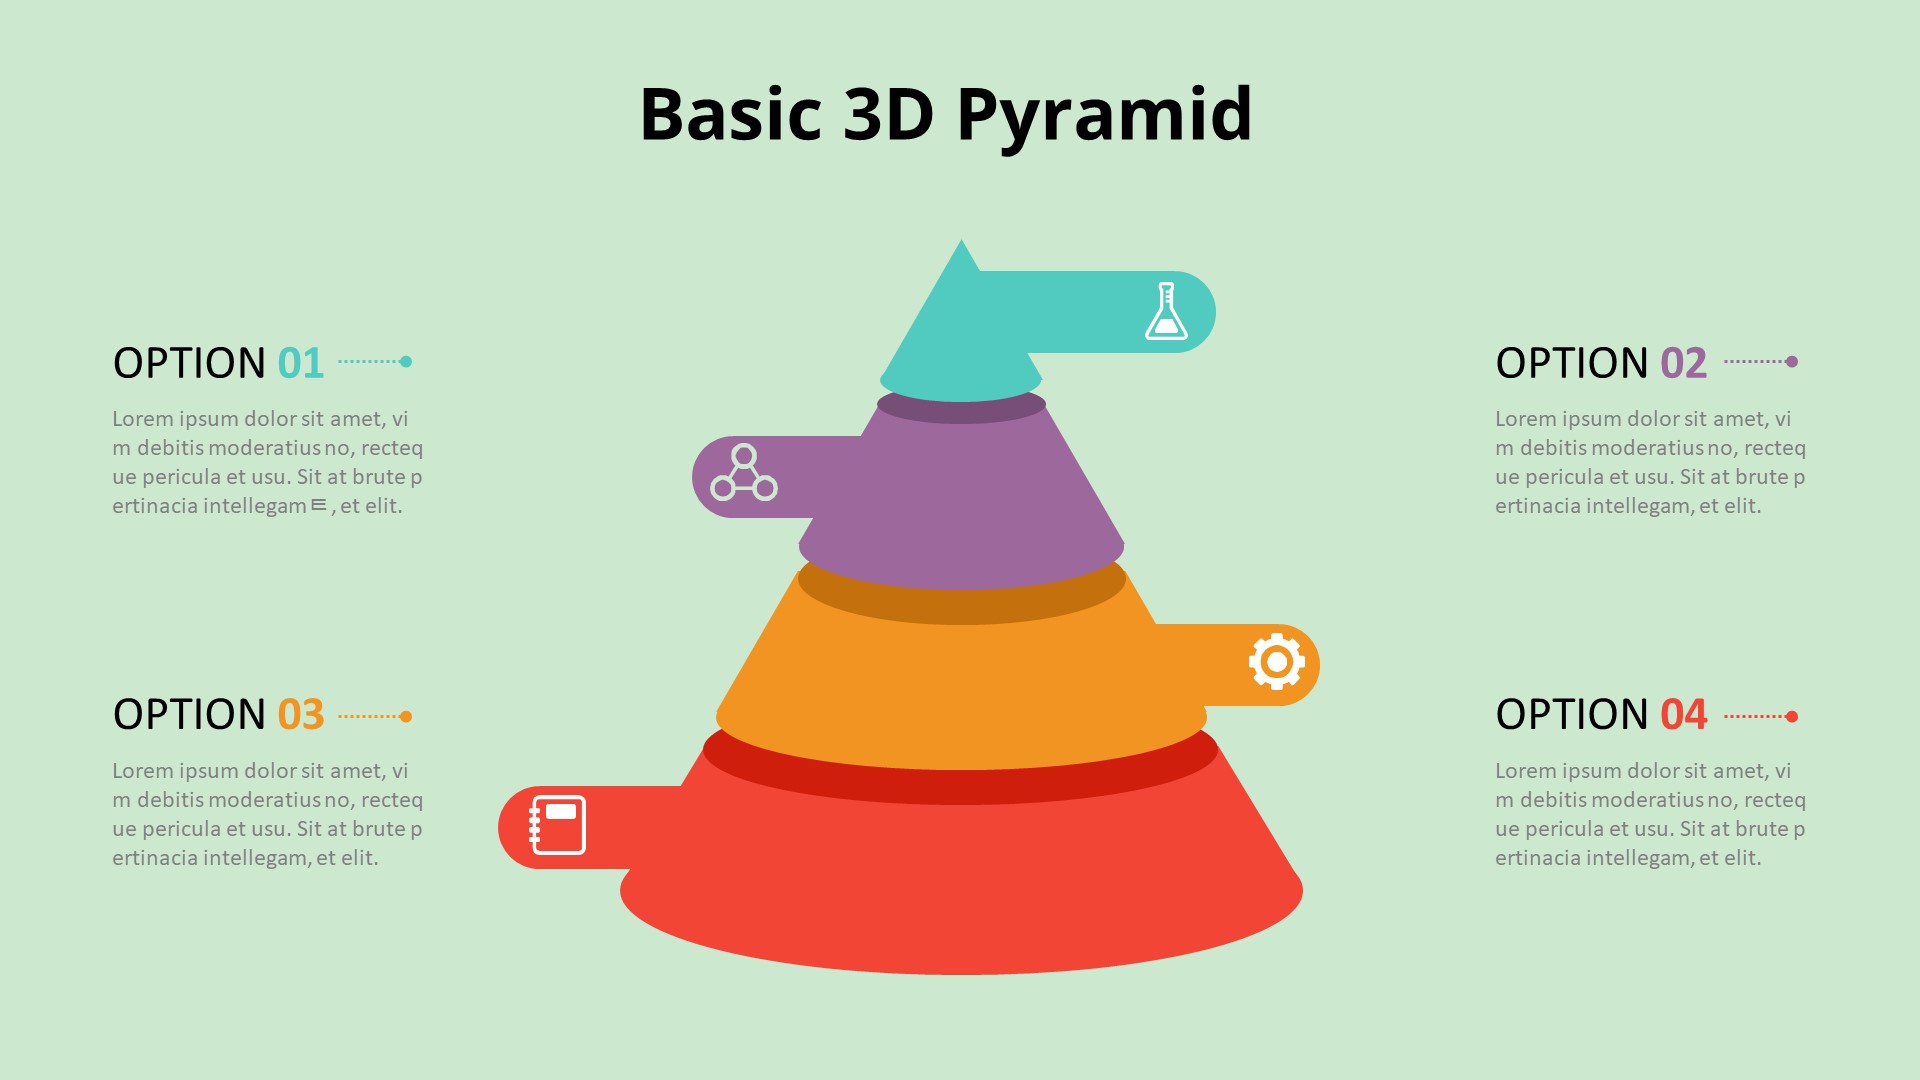 【2206期】PPT模板-3D圆锥形金字塔图表动画PPT模板